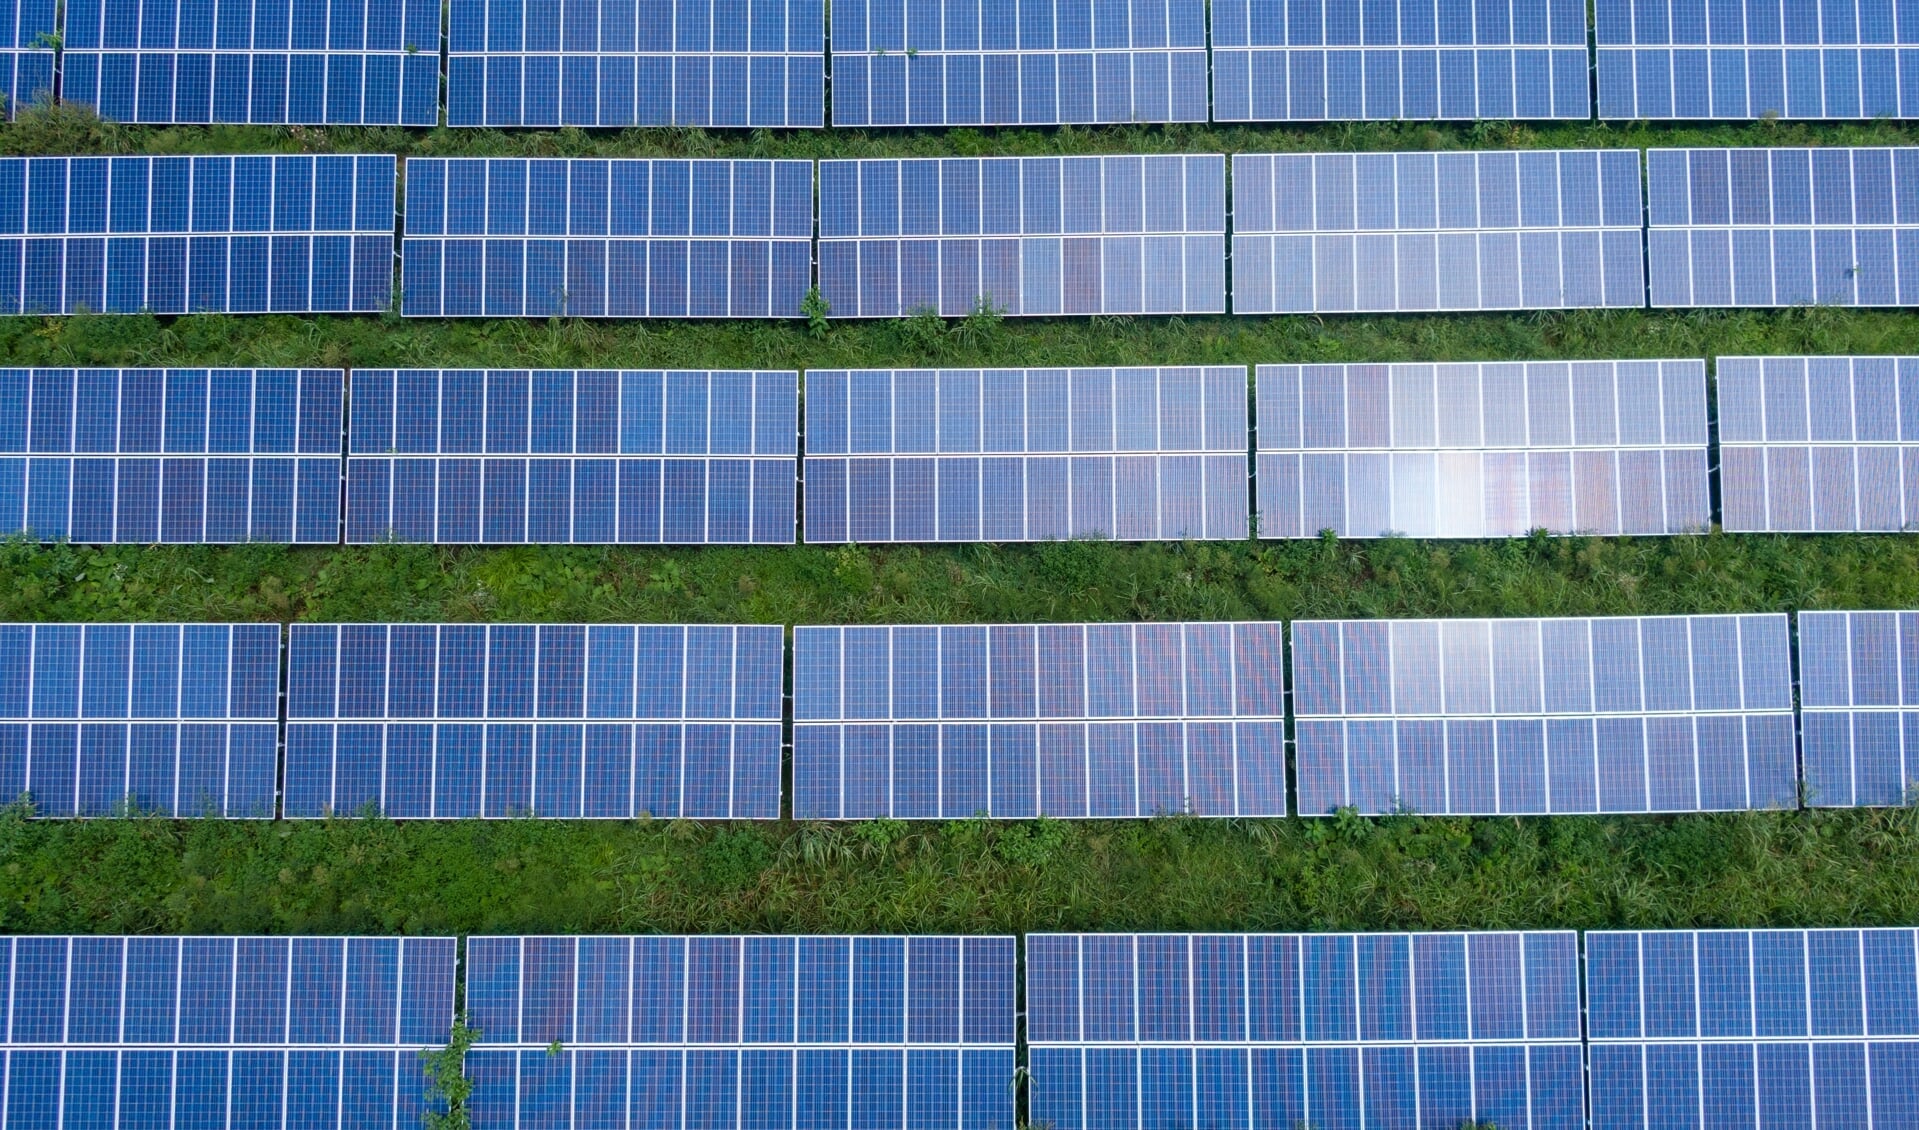 Huren van zonnepanelen wordt steeds populairder in Nederland 